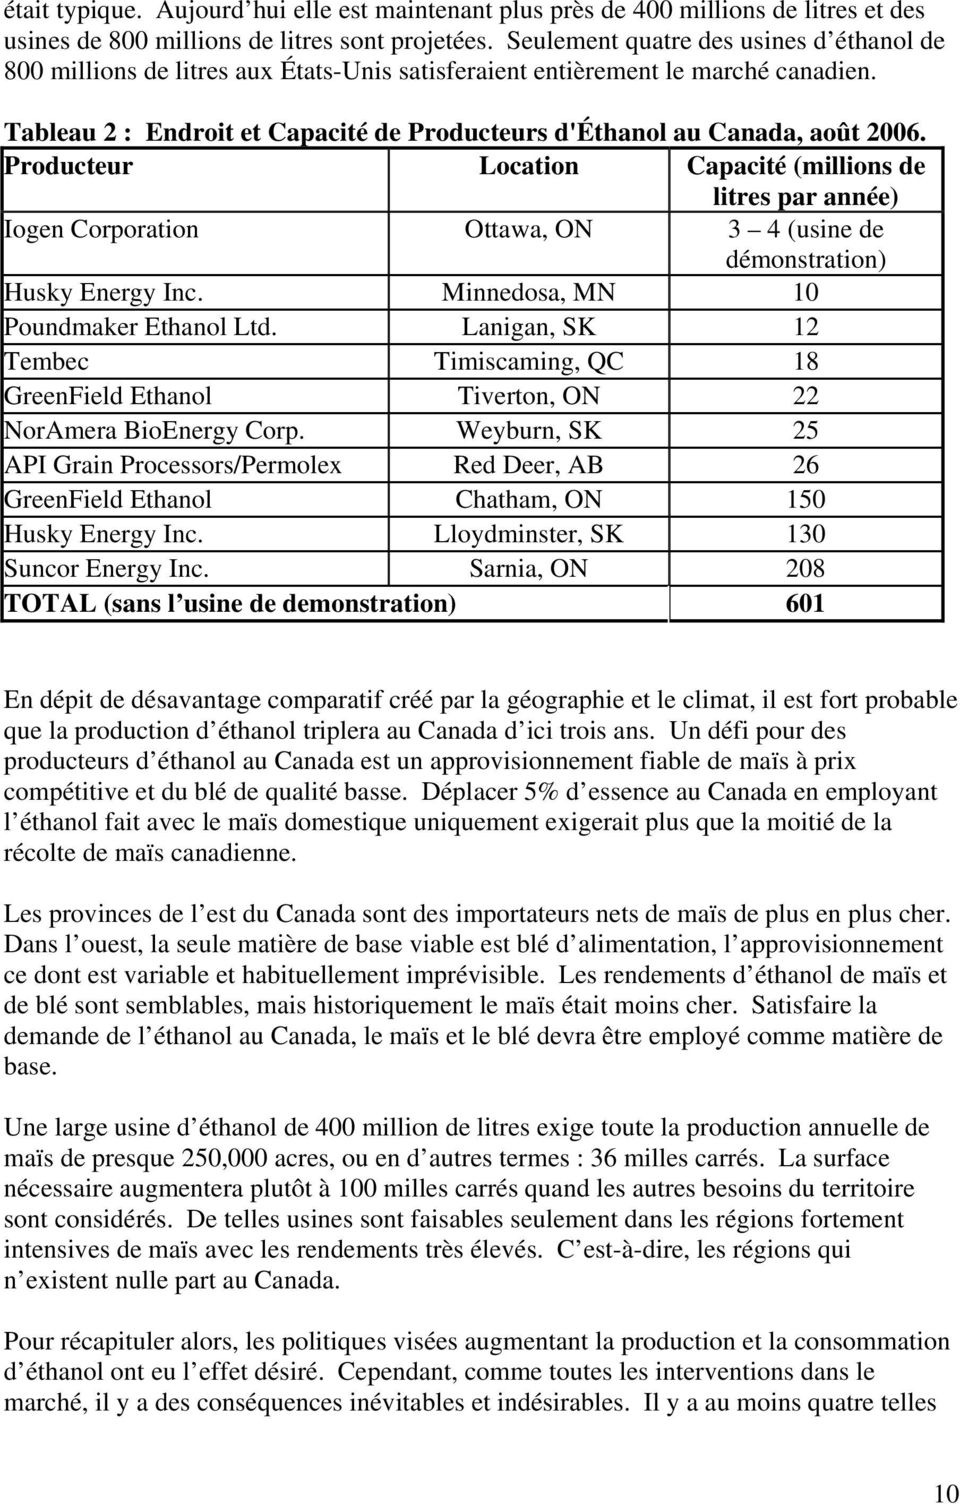 Tableau 2 : Endroit et Capacité de Producteurs d'éthanol au Canada, août 2006.